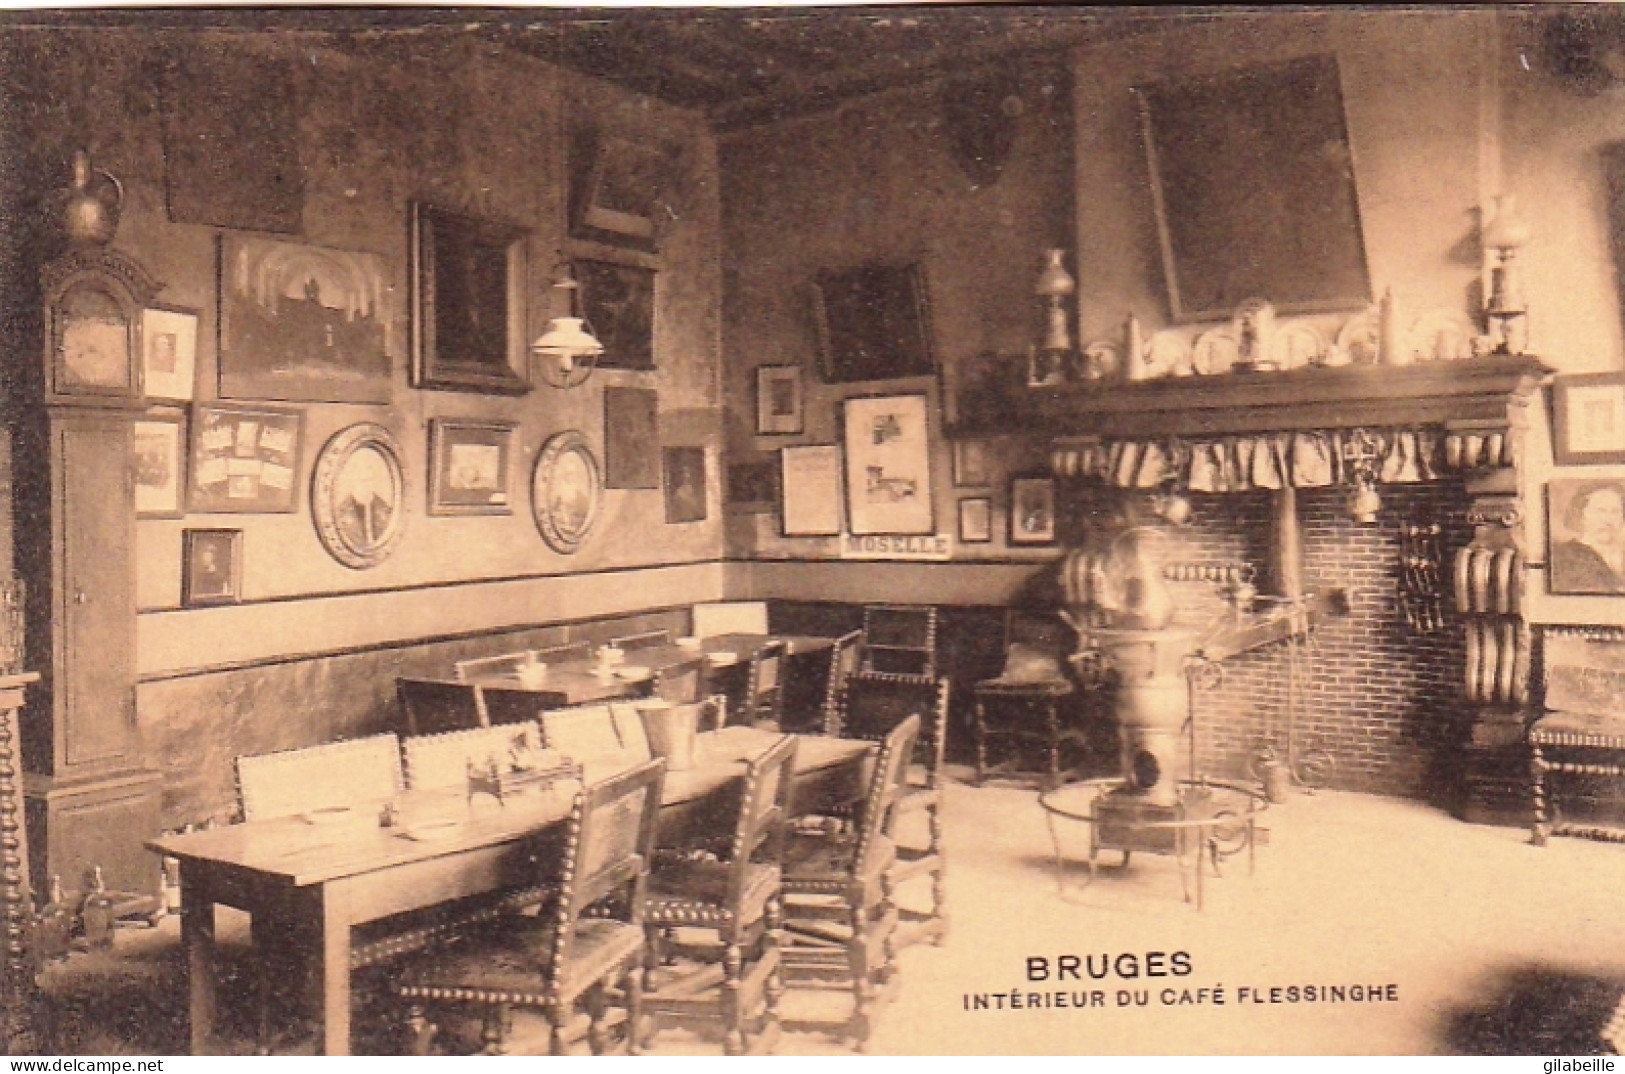 BRUGGE - BRUGES - Interieur Du Café Flessinghe - Brugge